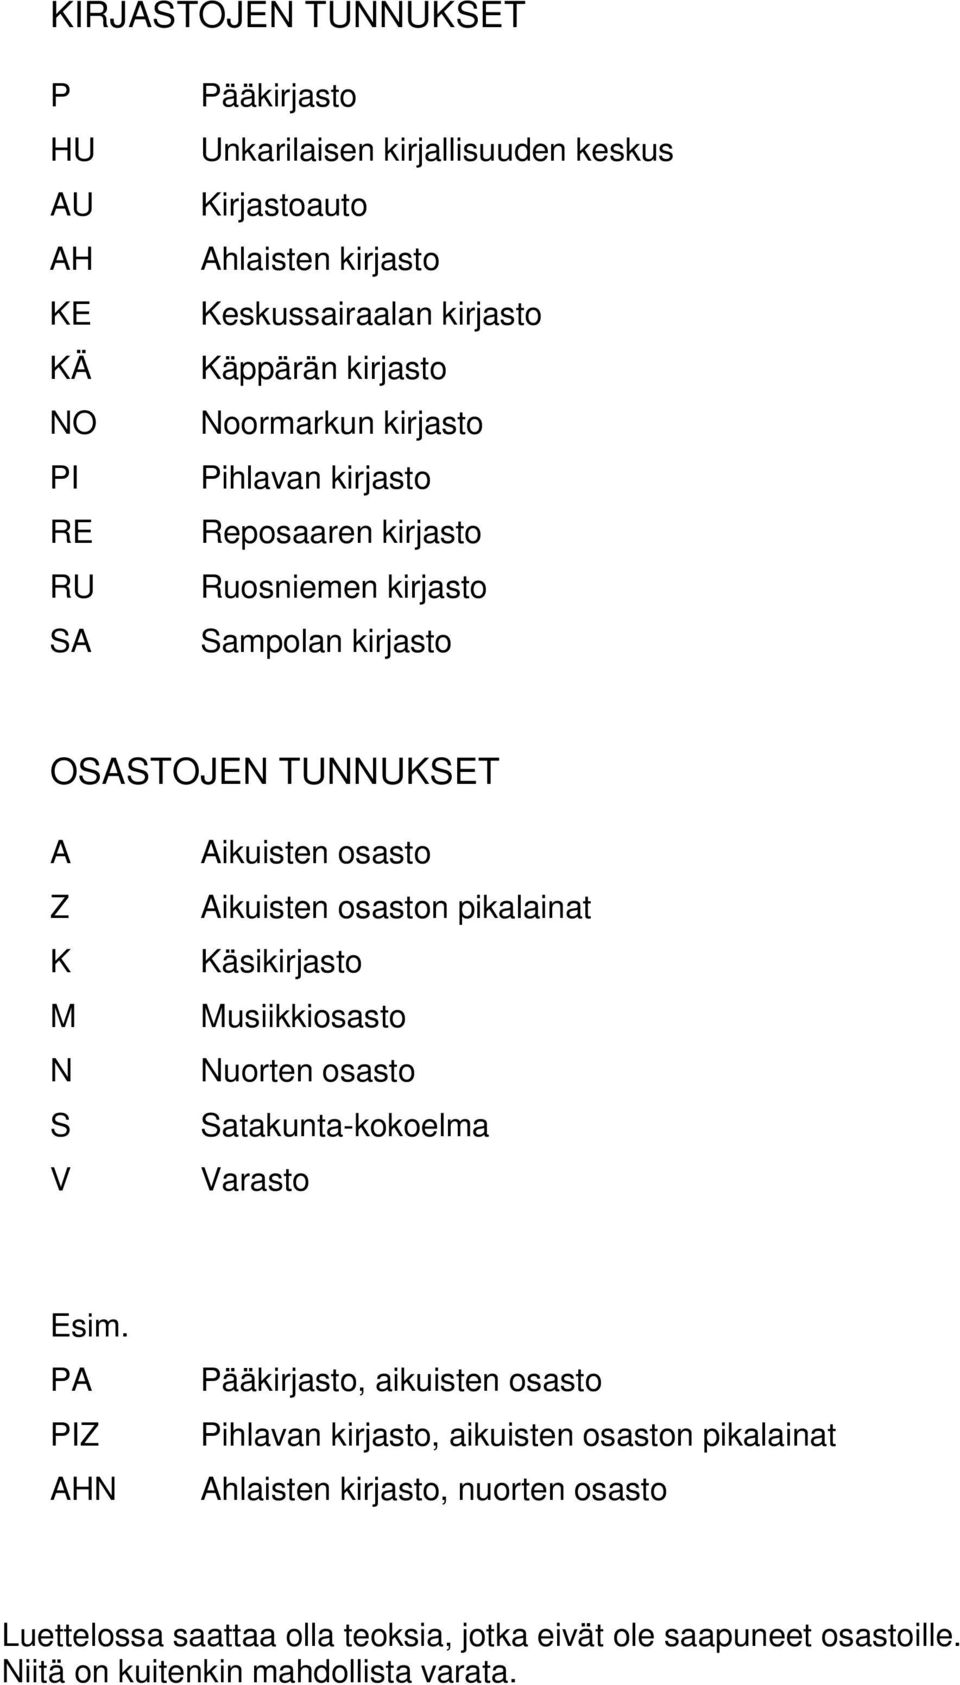 Aikuisten osaston pikalainat Käsikirjasto Musiikkiosasto Nuorten osasto Satakunta-kokoelma Varasto Esim.